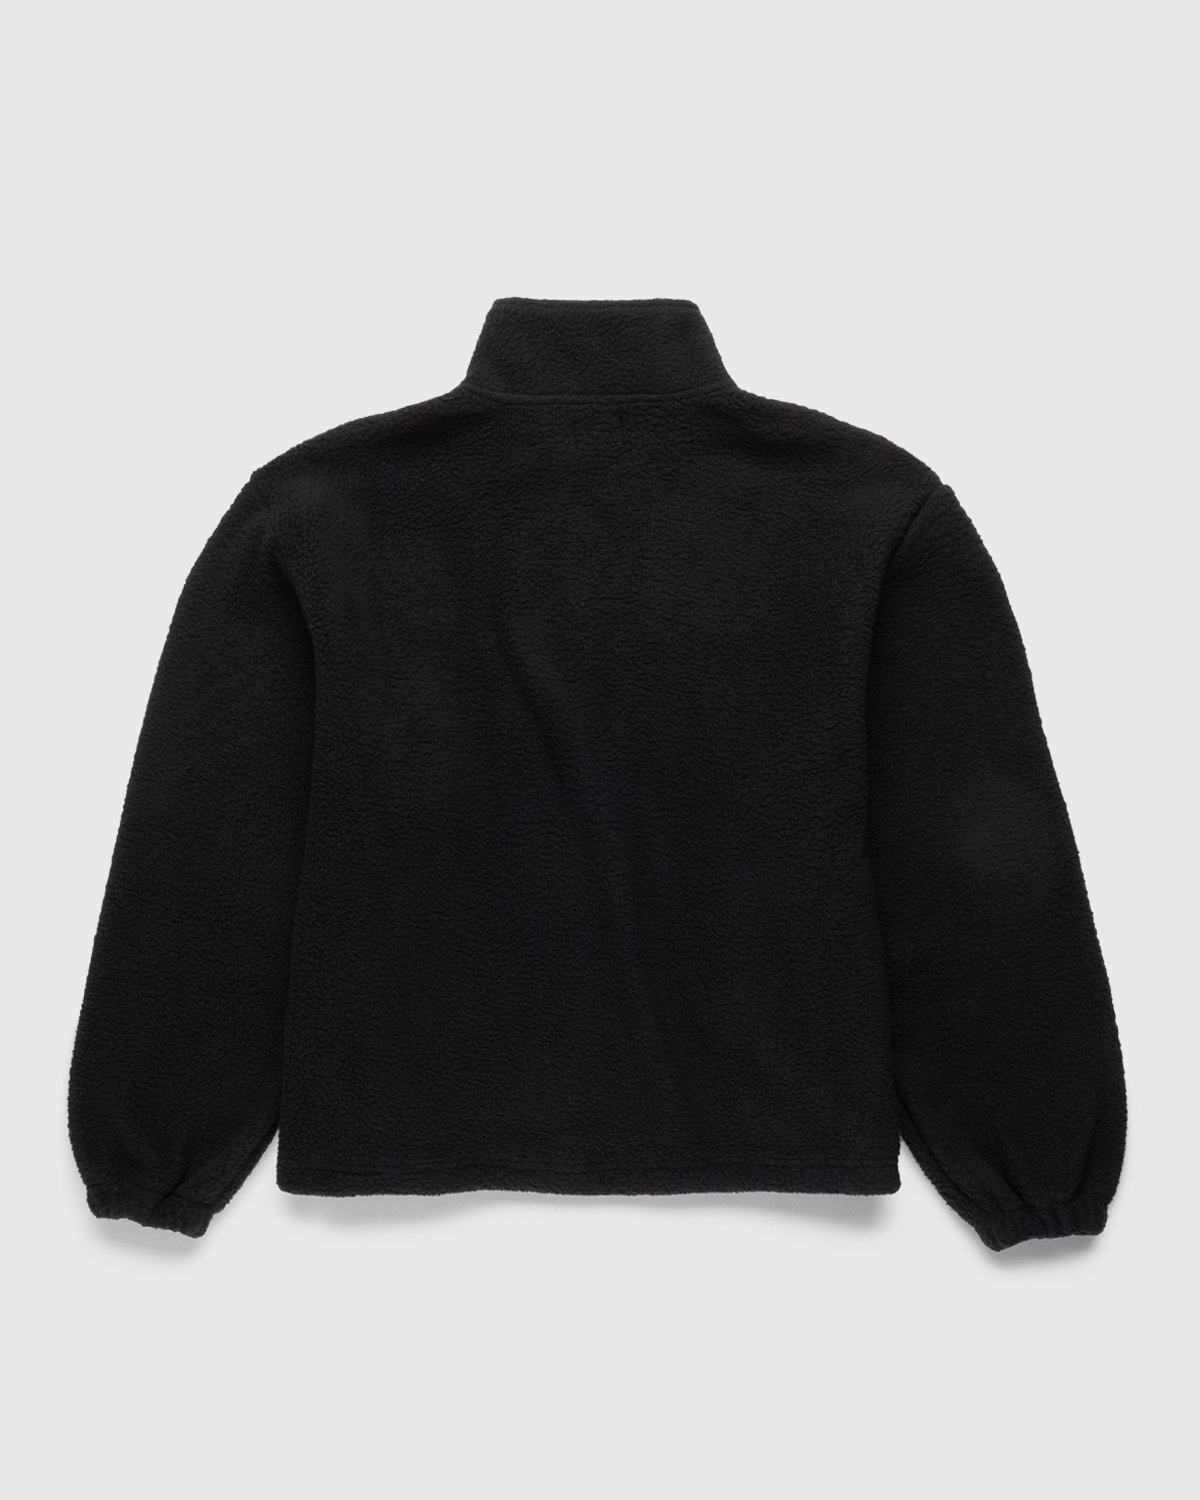 Patta – Sherling Fleece Jacket Black - Fleece Jackets - Black - Image 2